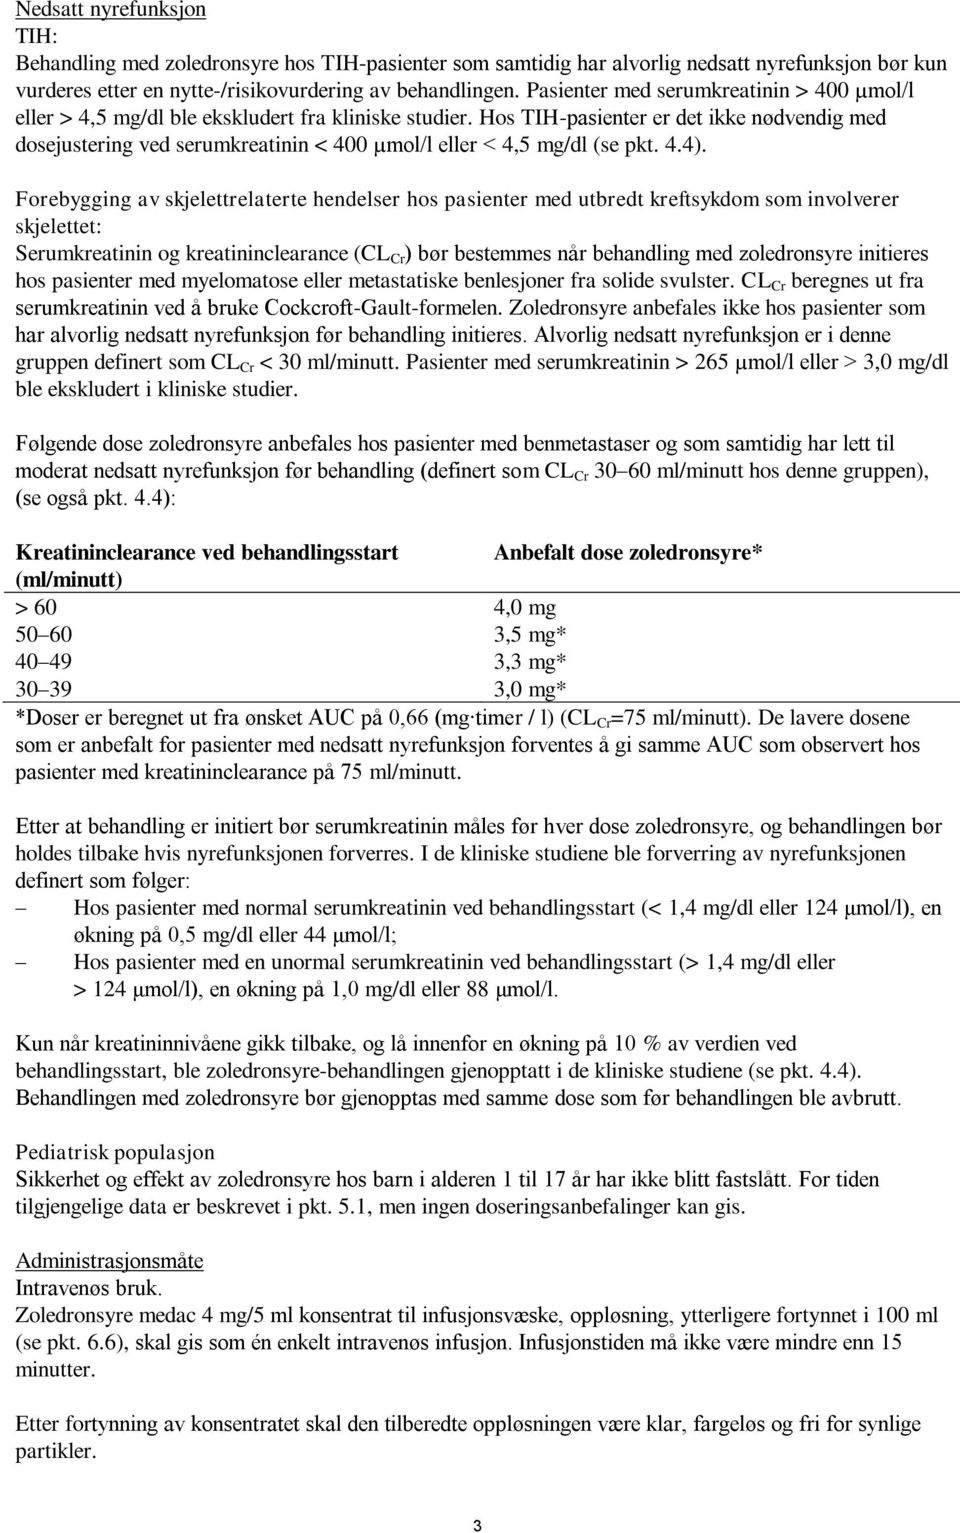 Hos TIH-pasienter er det ikke nødvendig med dosejustering ved serumkreatinin < 400 µmol/l eller < 4,5 mg/dl (se pkt. 4.4).